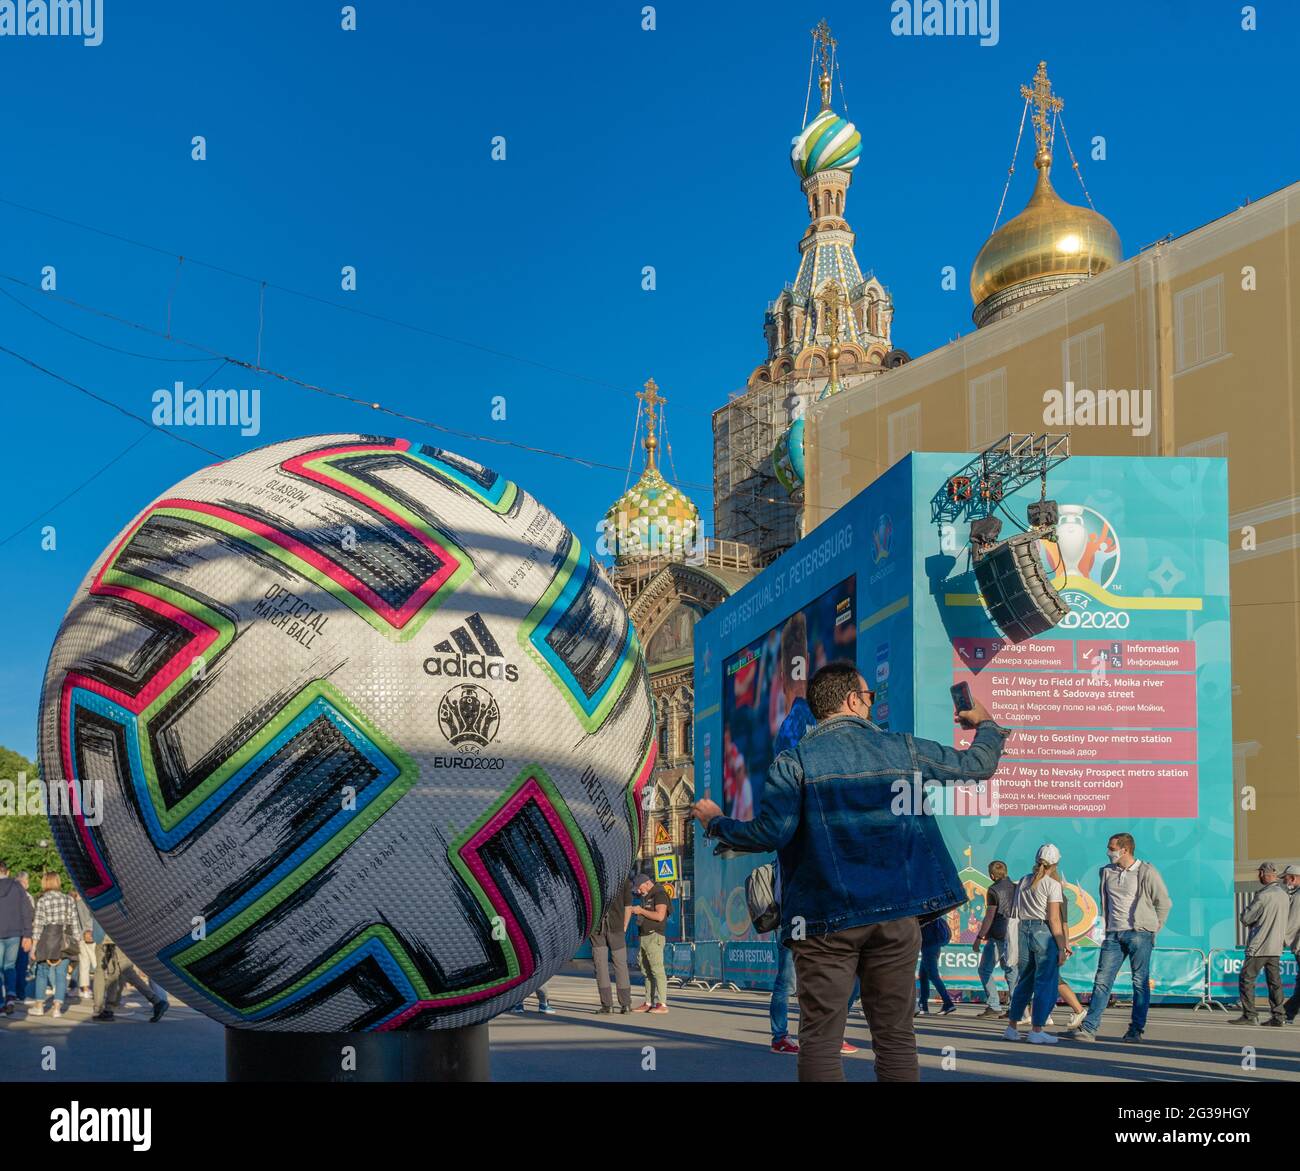 Grande pallone ufficiale del campionato euro uefa 2020 ambientato in una zona fan nel centro storico di San Pietroburgo, Russia Foto Stock